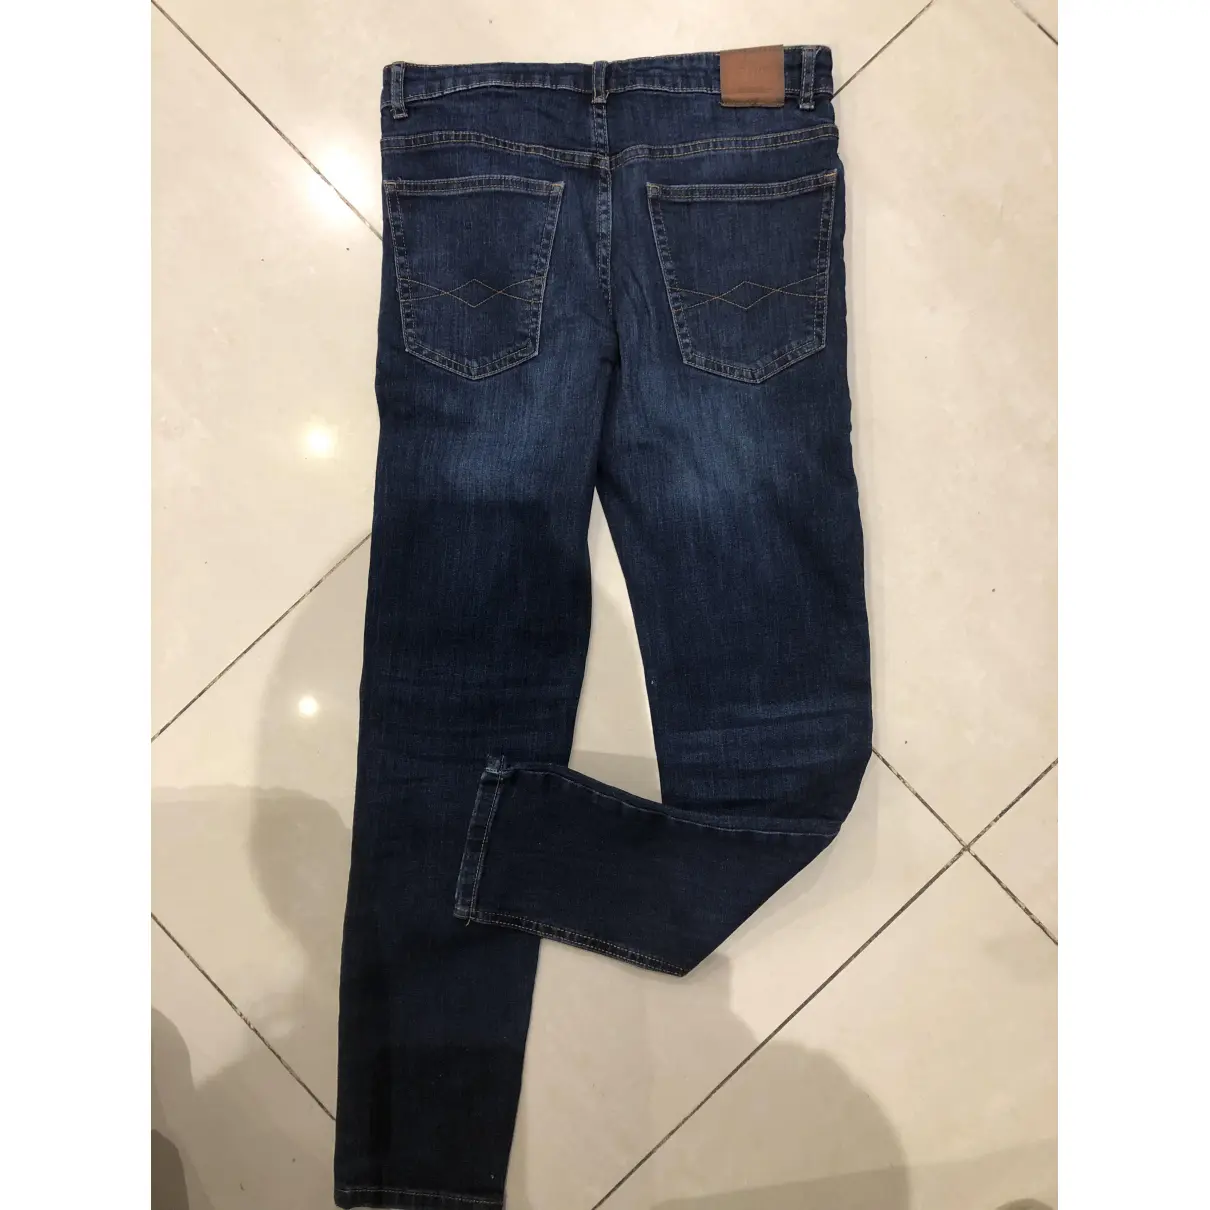 Buy Zara Blue Denim - Jeans Trousers online